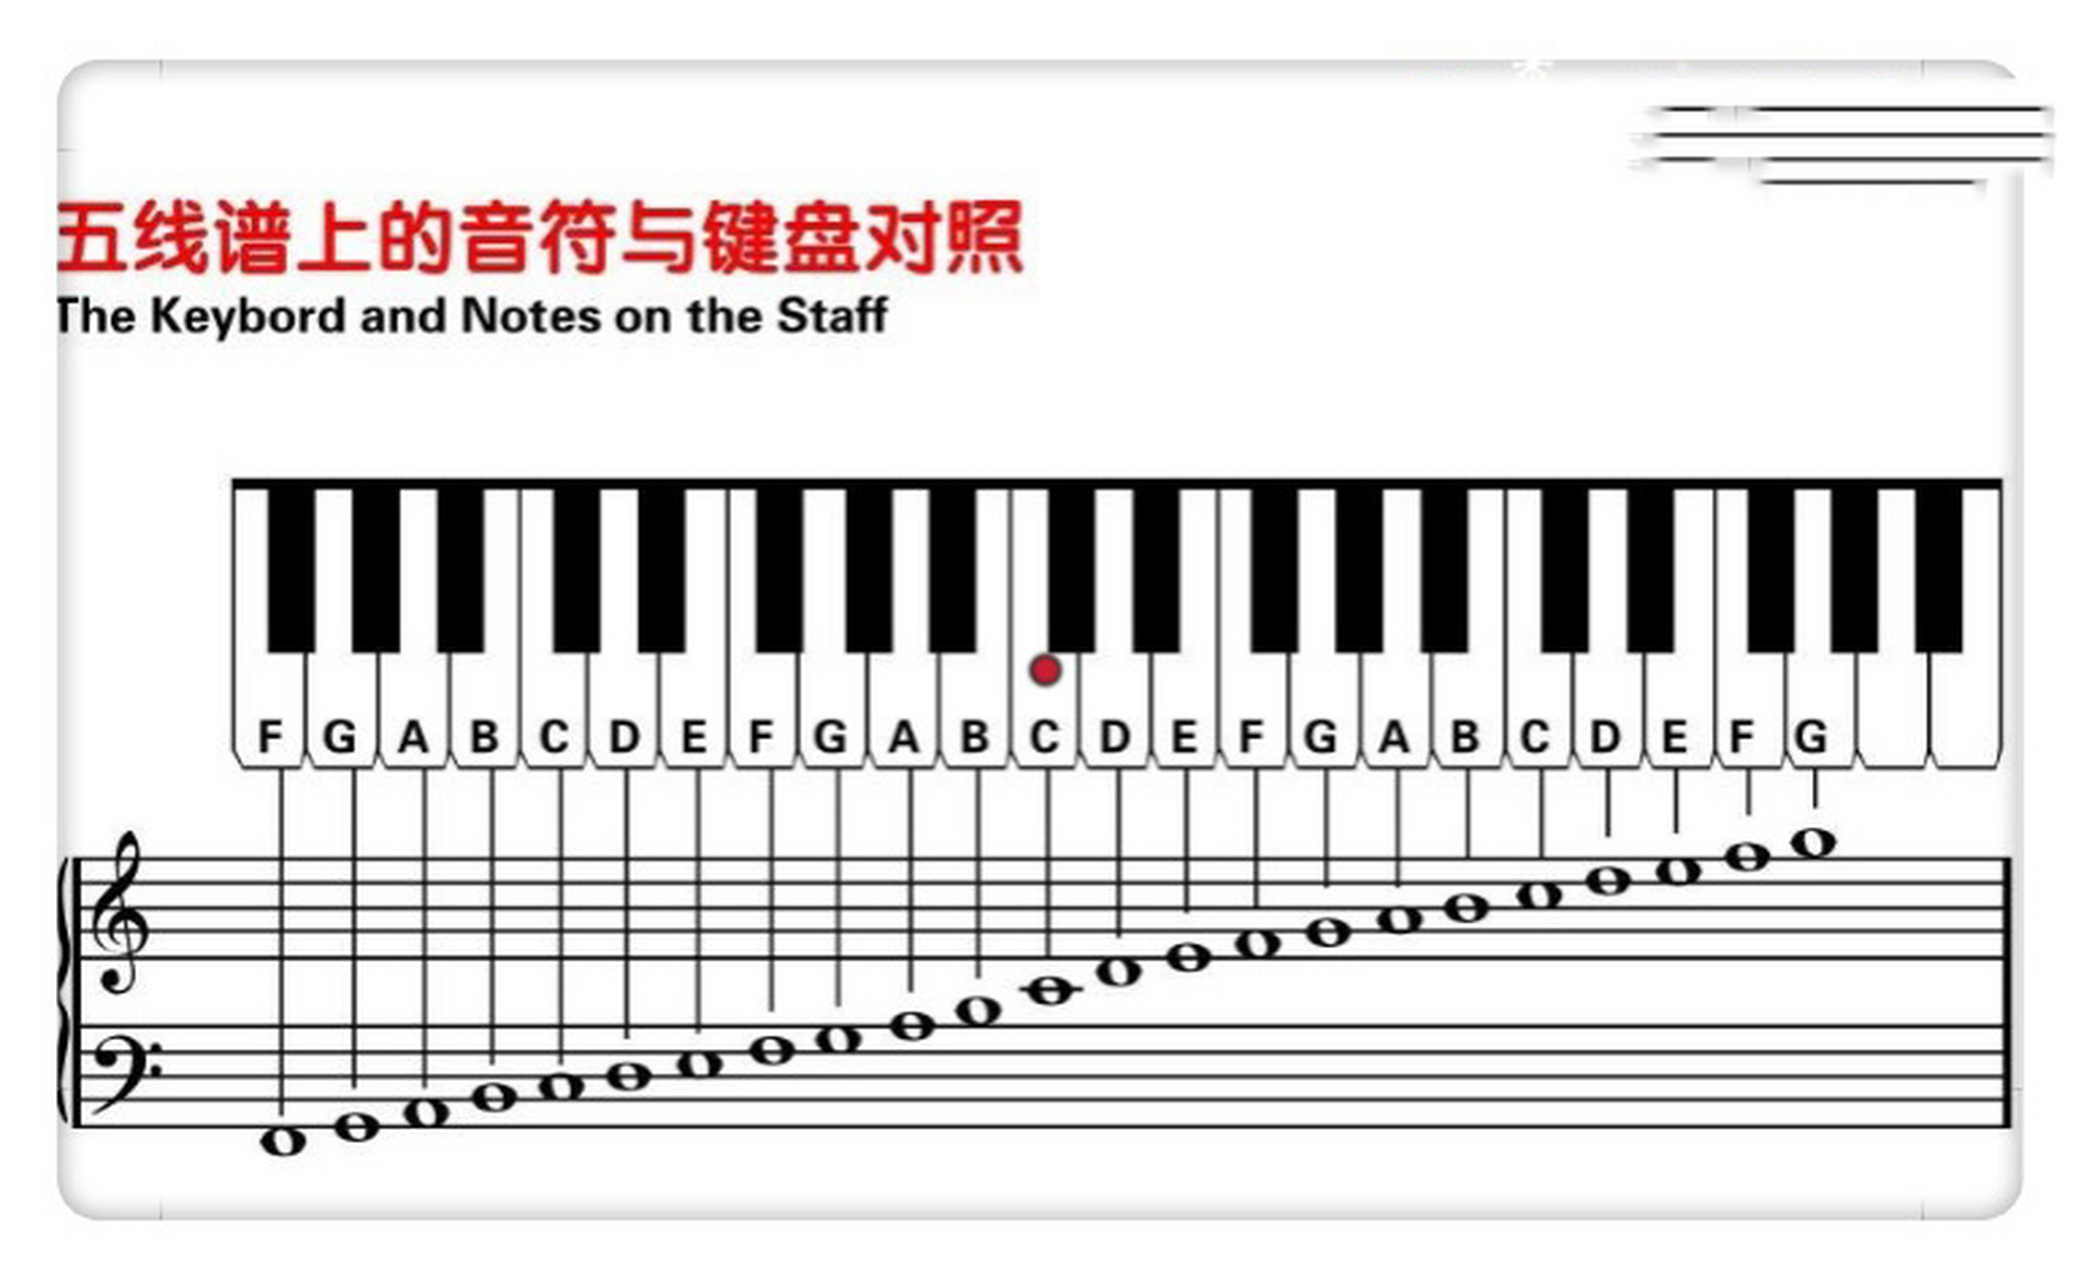 五线谱96音符与钢琴键盘93对照表 常用的一些音符,五线谱与钢琴